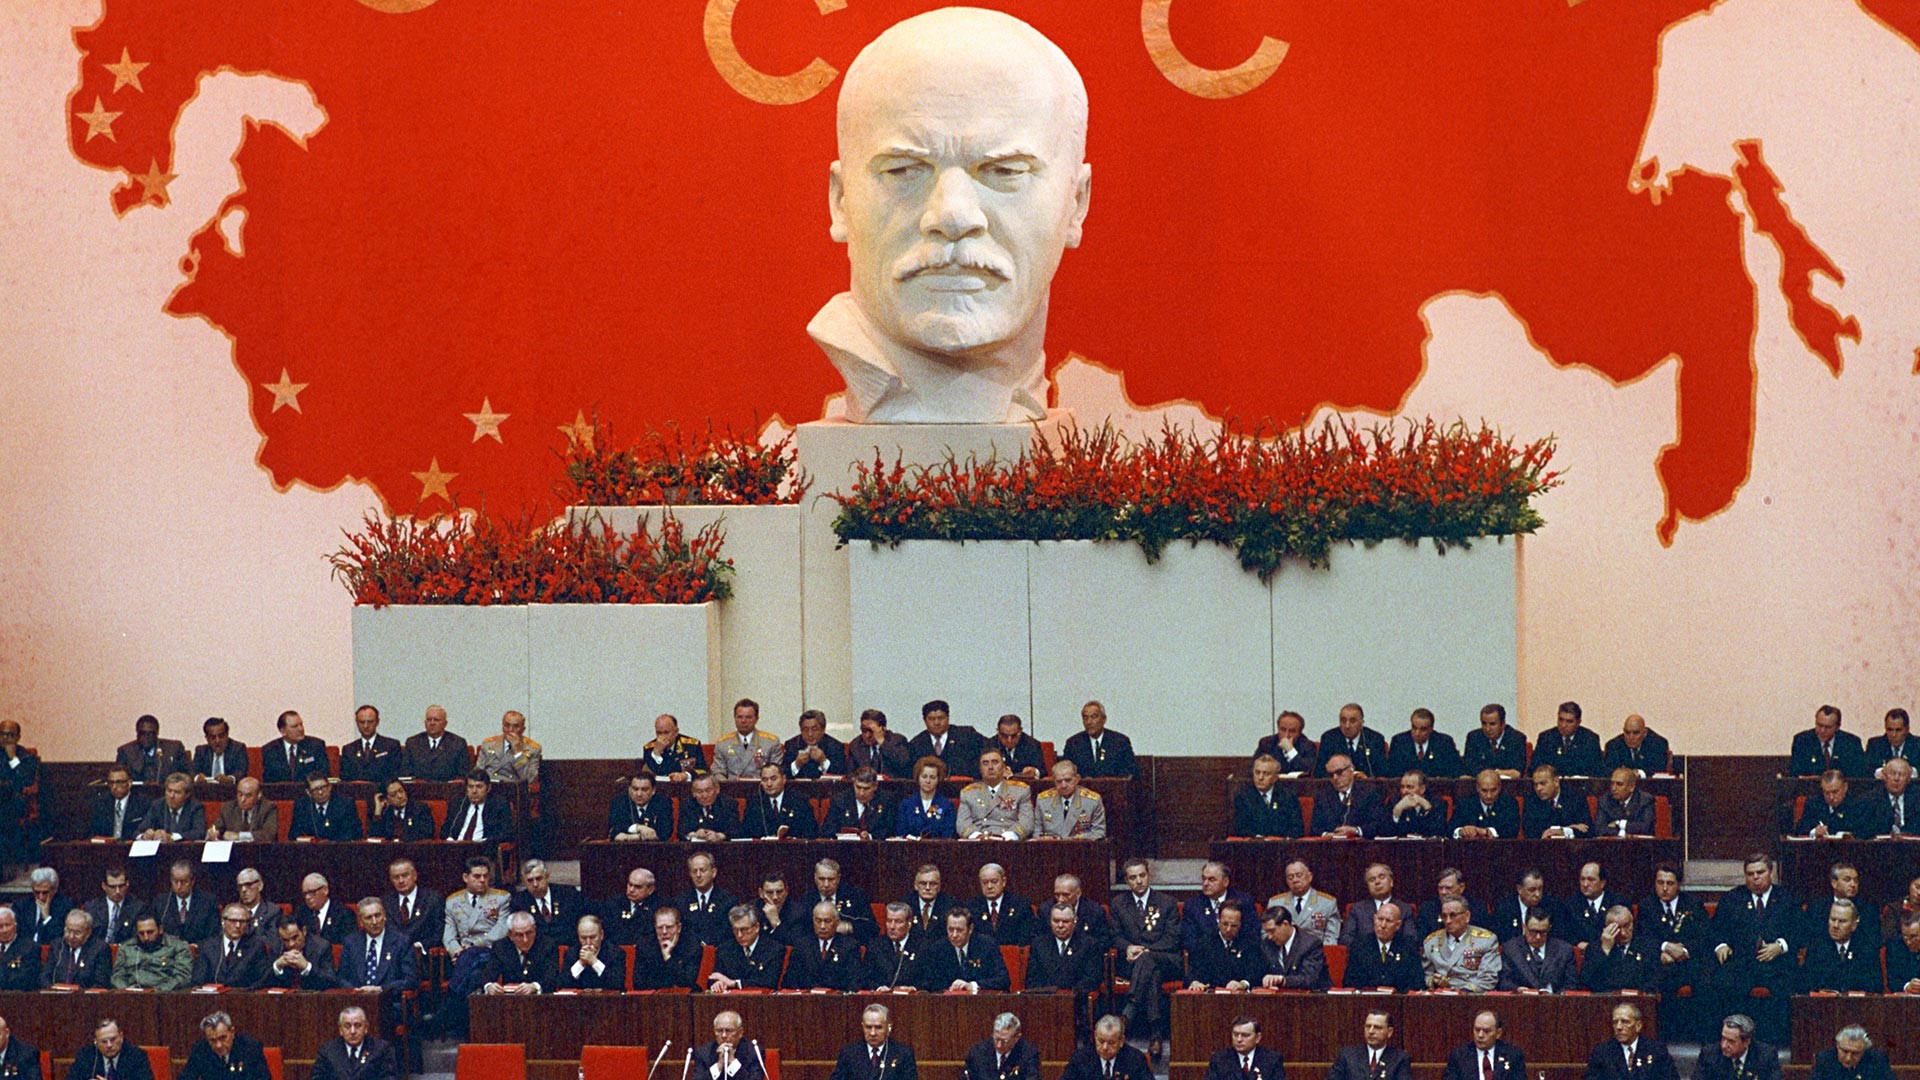 Réunion du Comité central du Parti communiste d'URSS, du Soviet suprême de l'URSS et du Soviet suprême de la RSFSR en 1972, pour les 50 ans de la formation de l'URSS